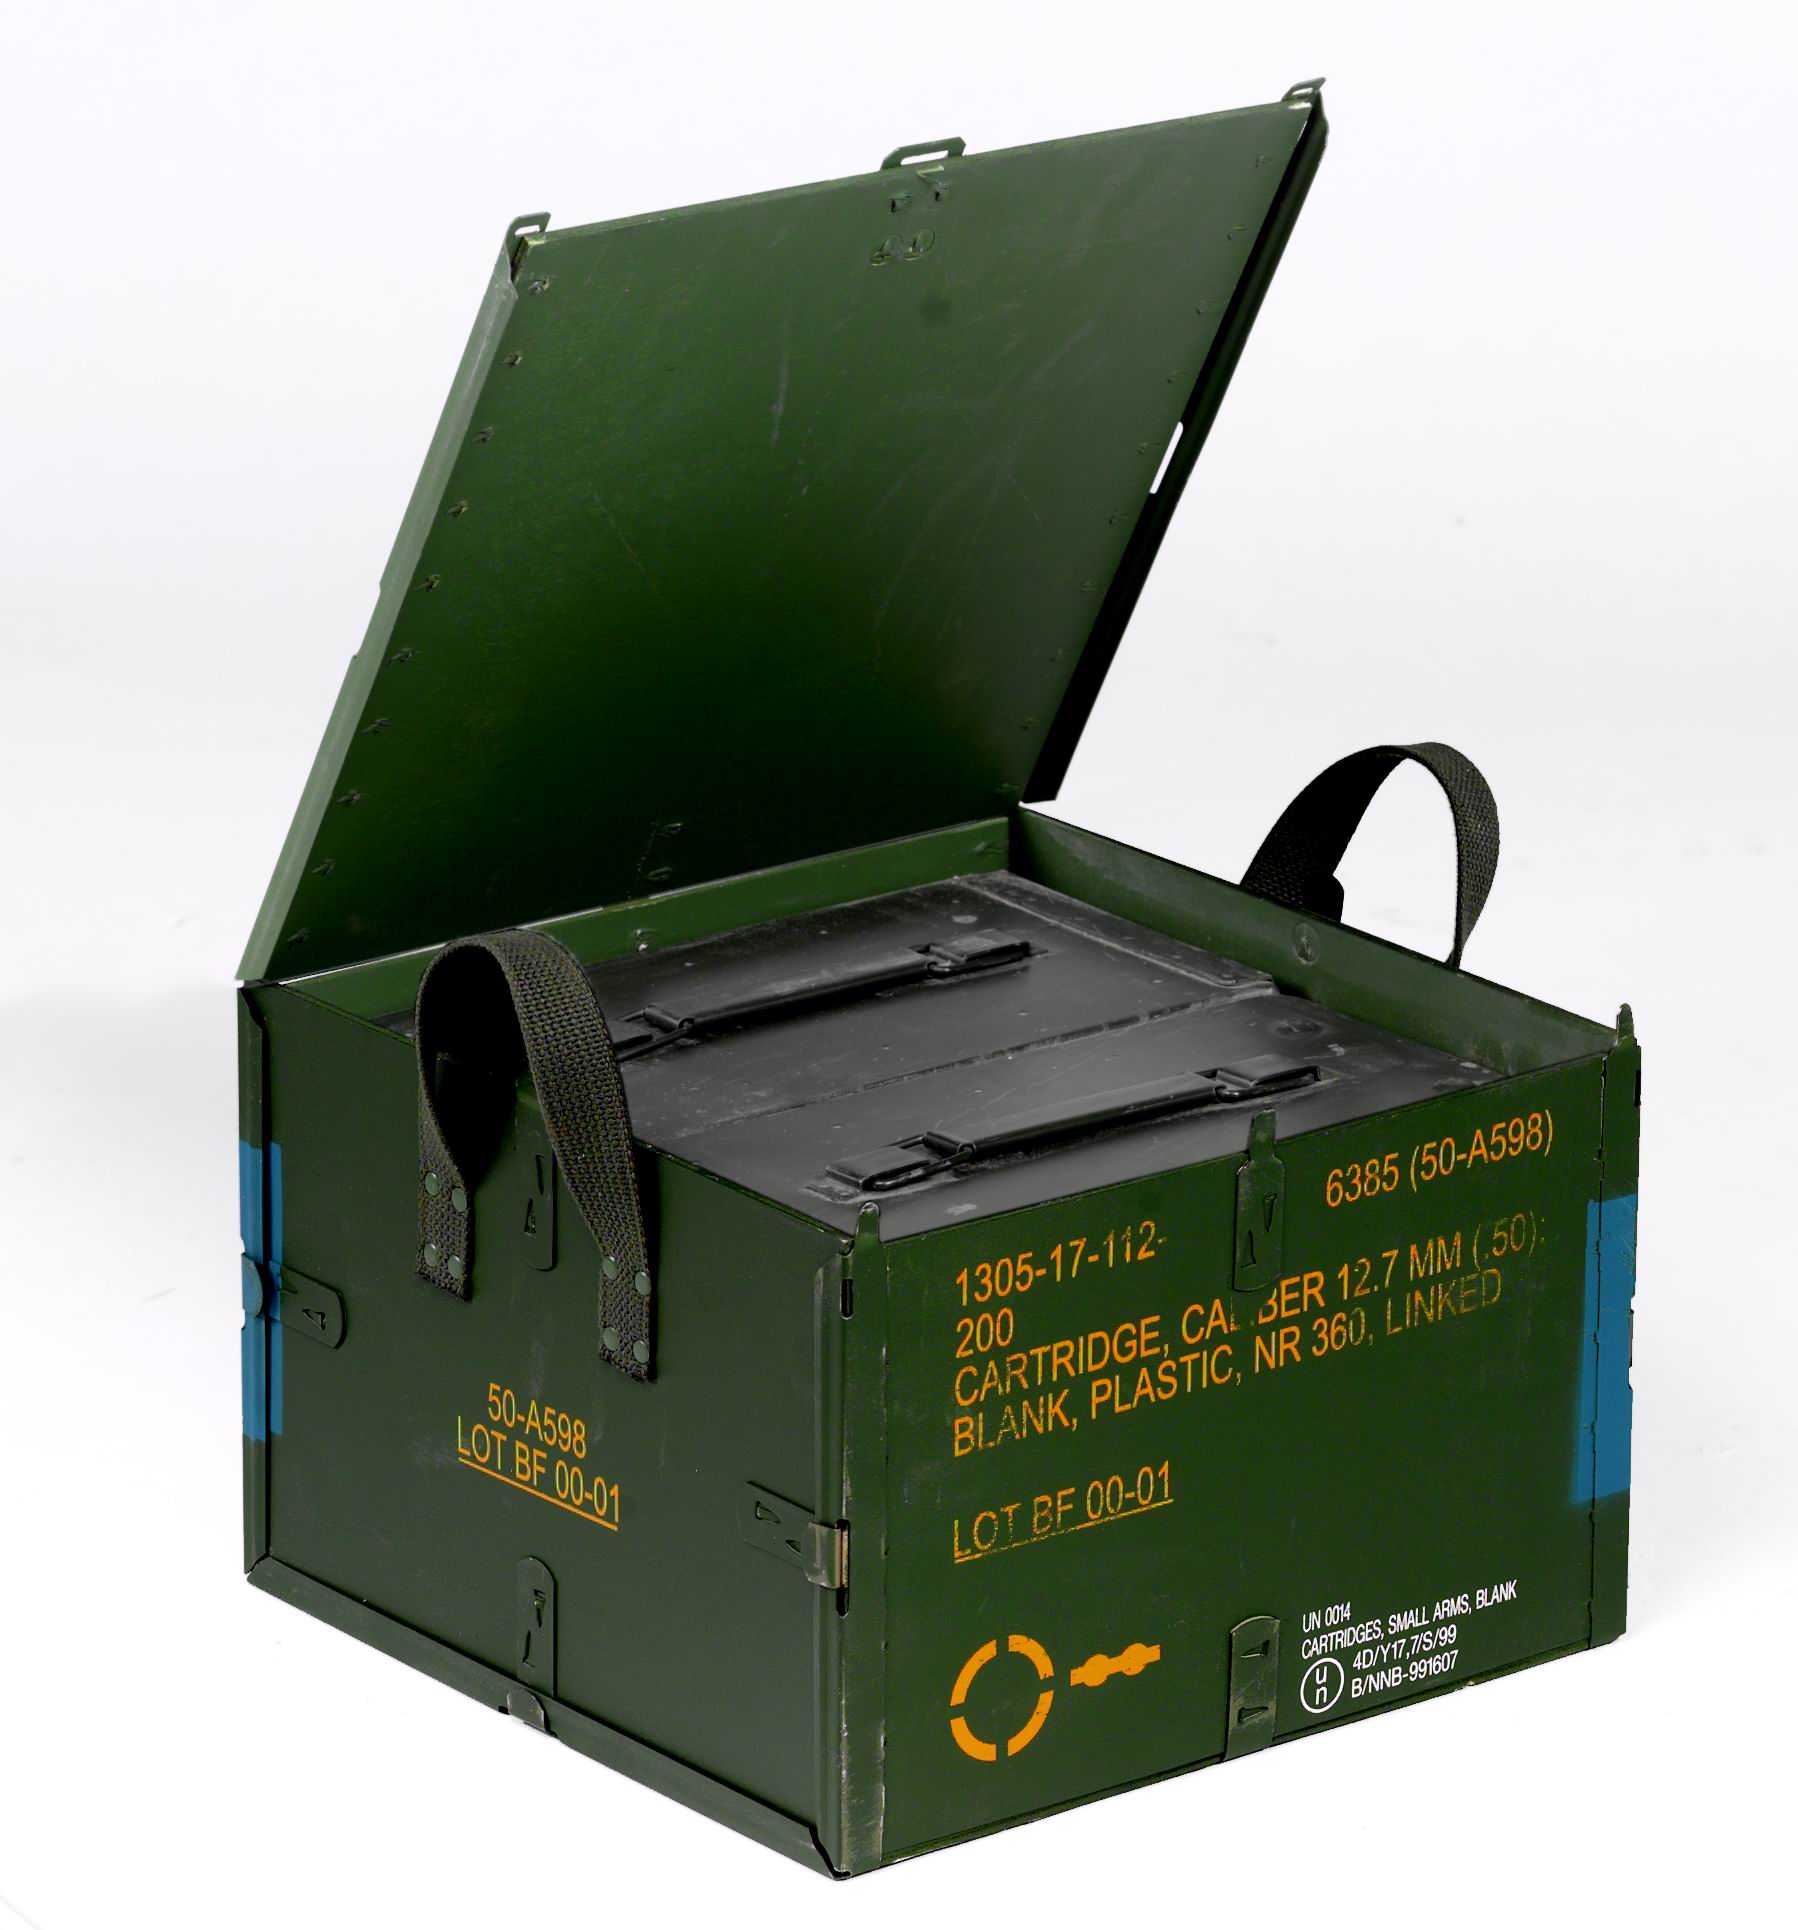 EUROBOX 61 - No-Nail Boxes - Reusable boxes in plywood